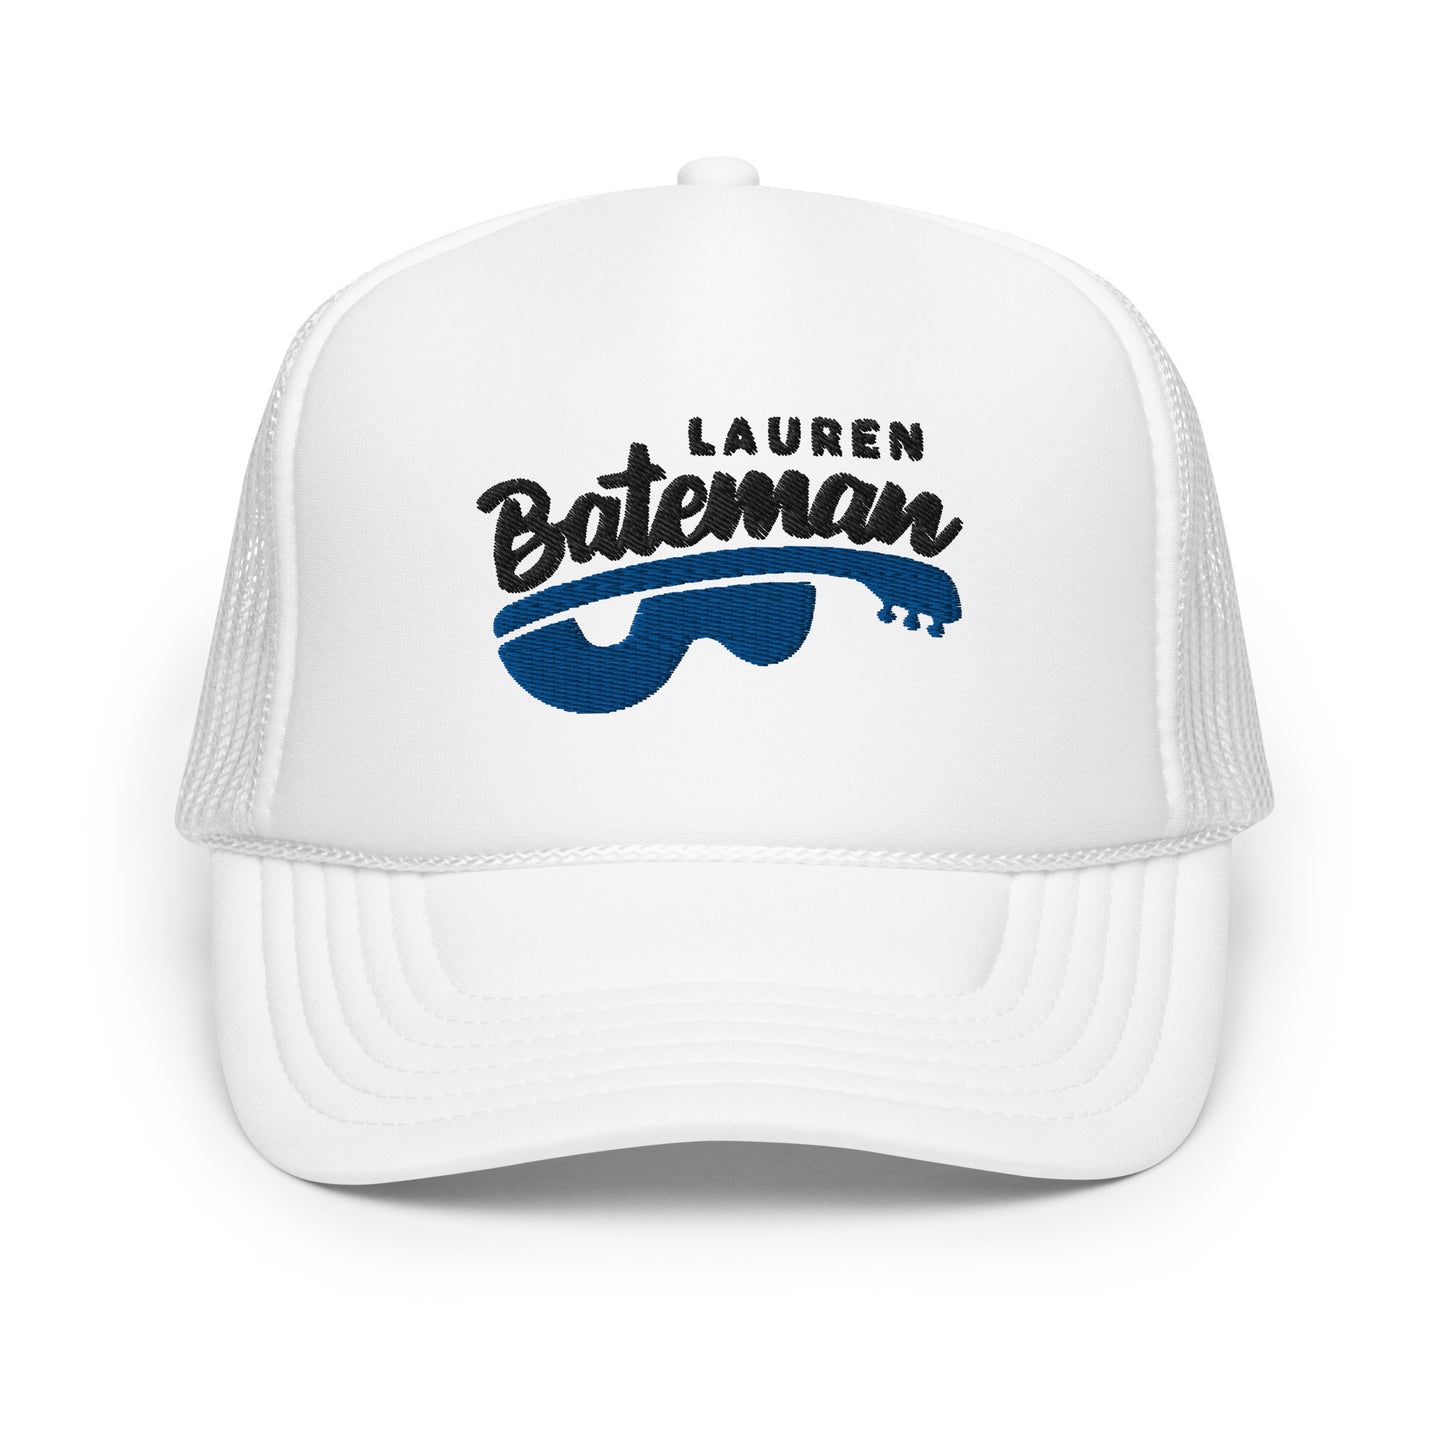 Lauren Bateman Foam trucker hat